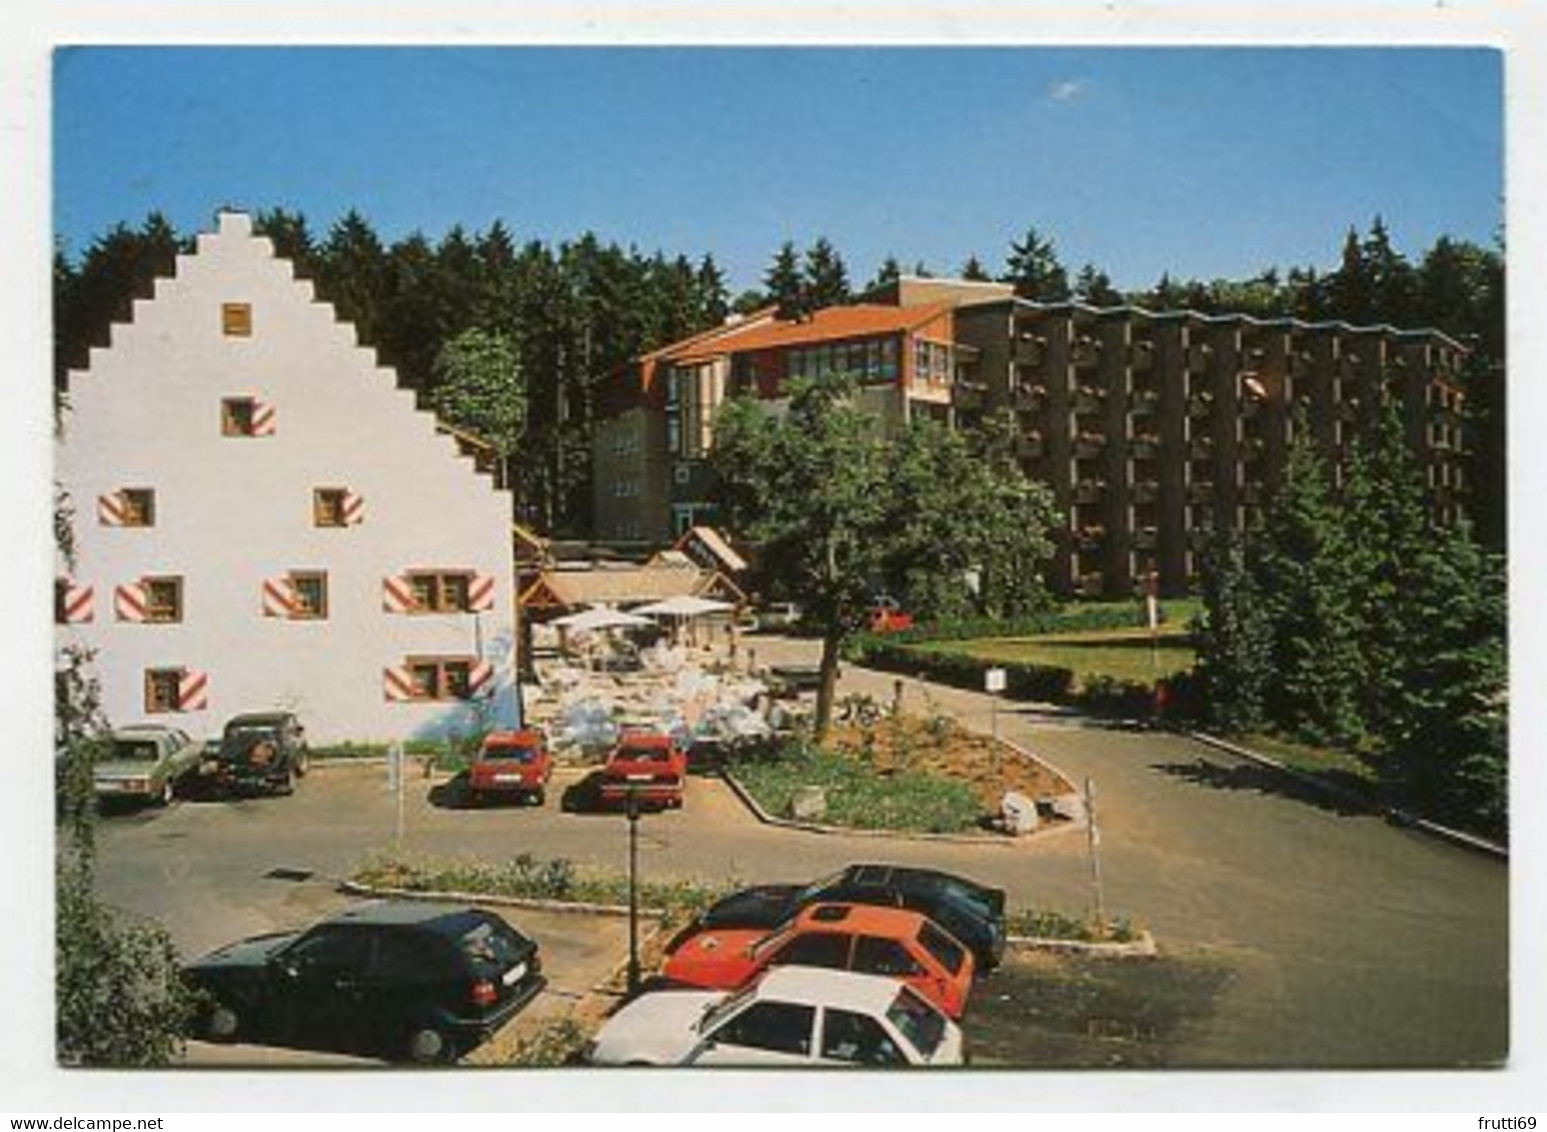 AK 023542 GERMANY - Bad Dürrheim / Schwarzwald - Hotel Hänslehof - Bad Duerrheim